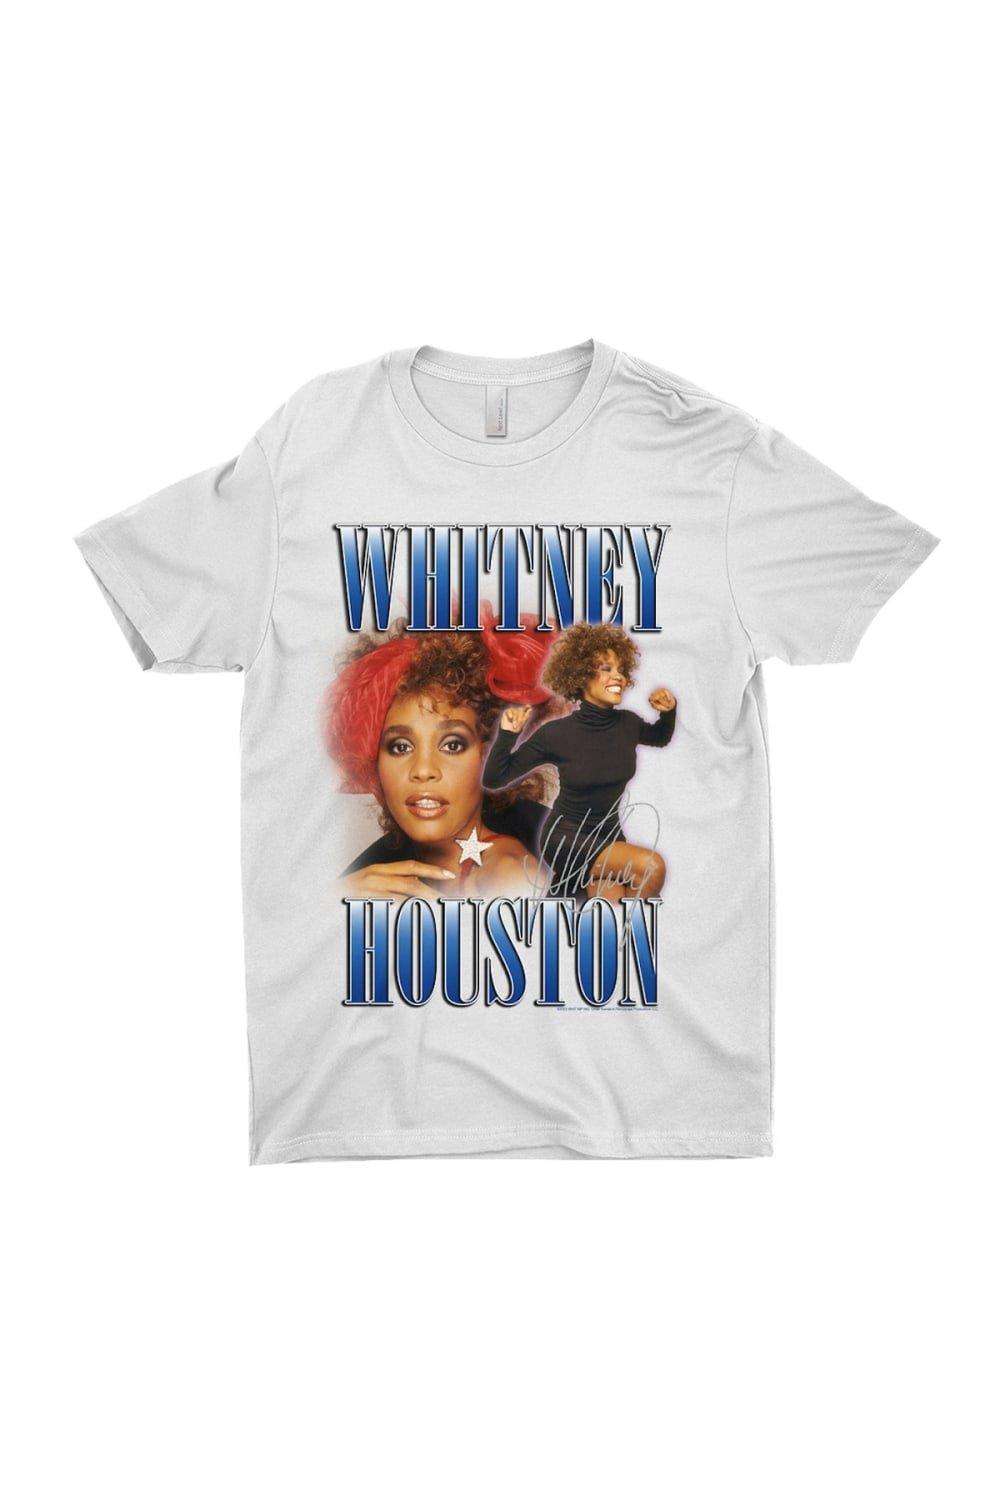 Хлопковая футболка в стиле 90-х годов Whitney Houston, белый 1 шт f45698 подшипник с иглой фотография 722083810